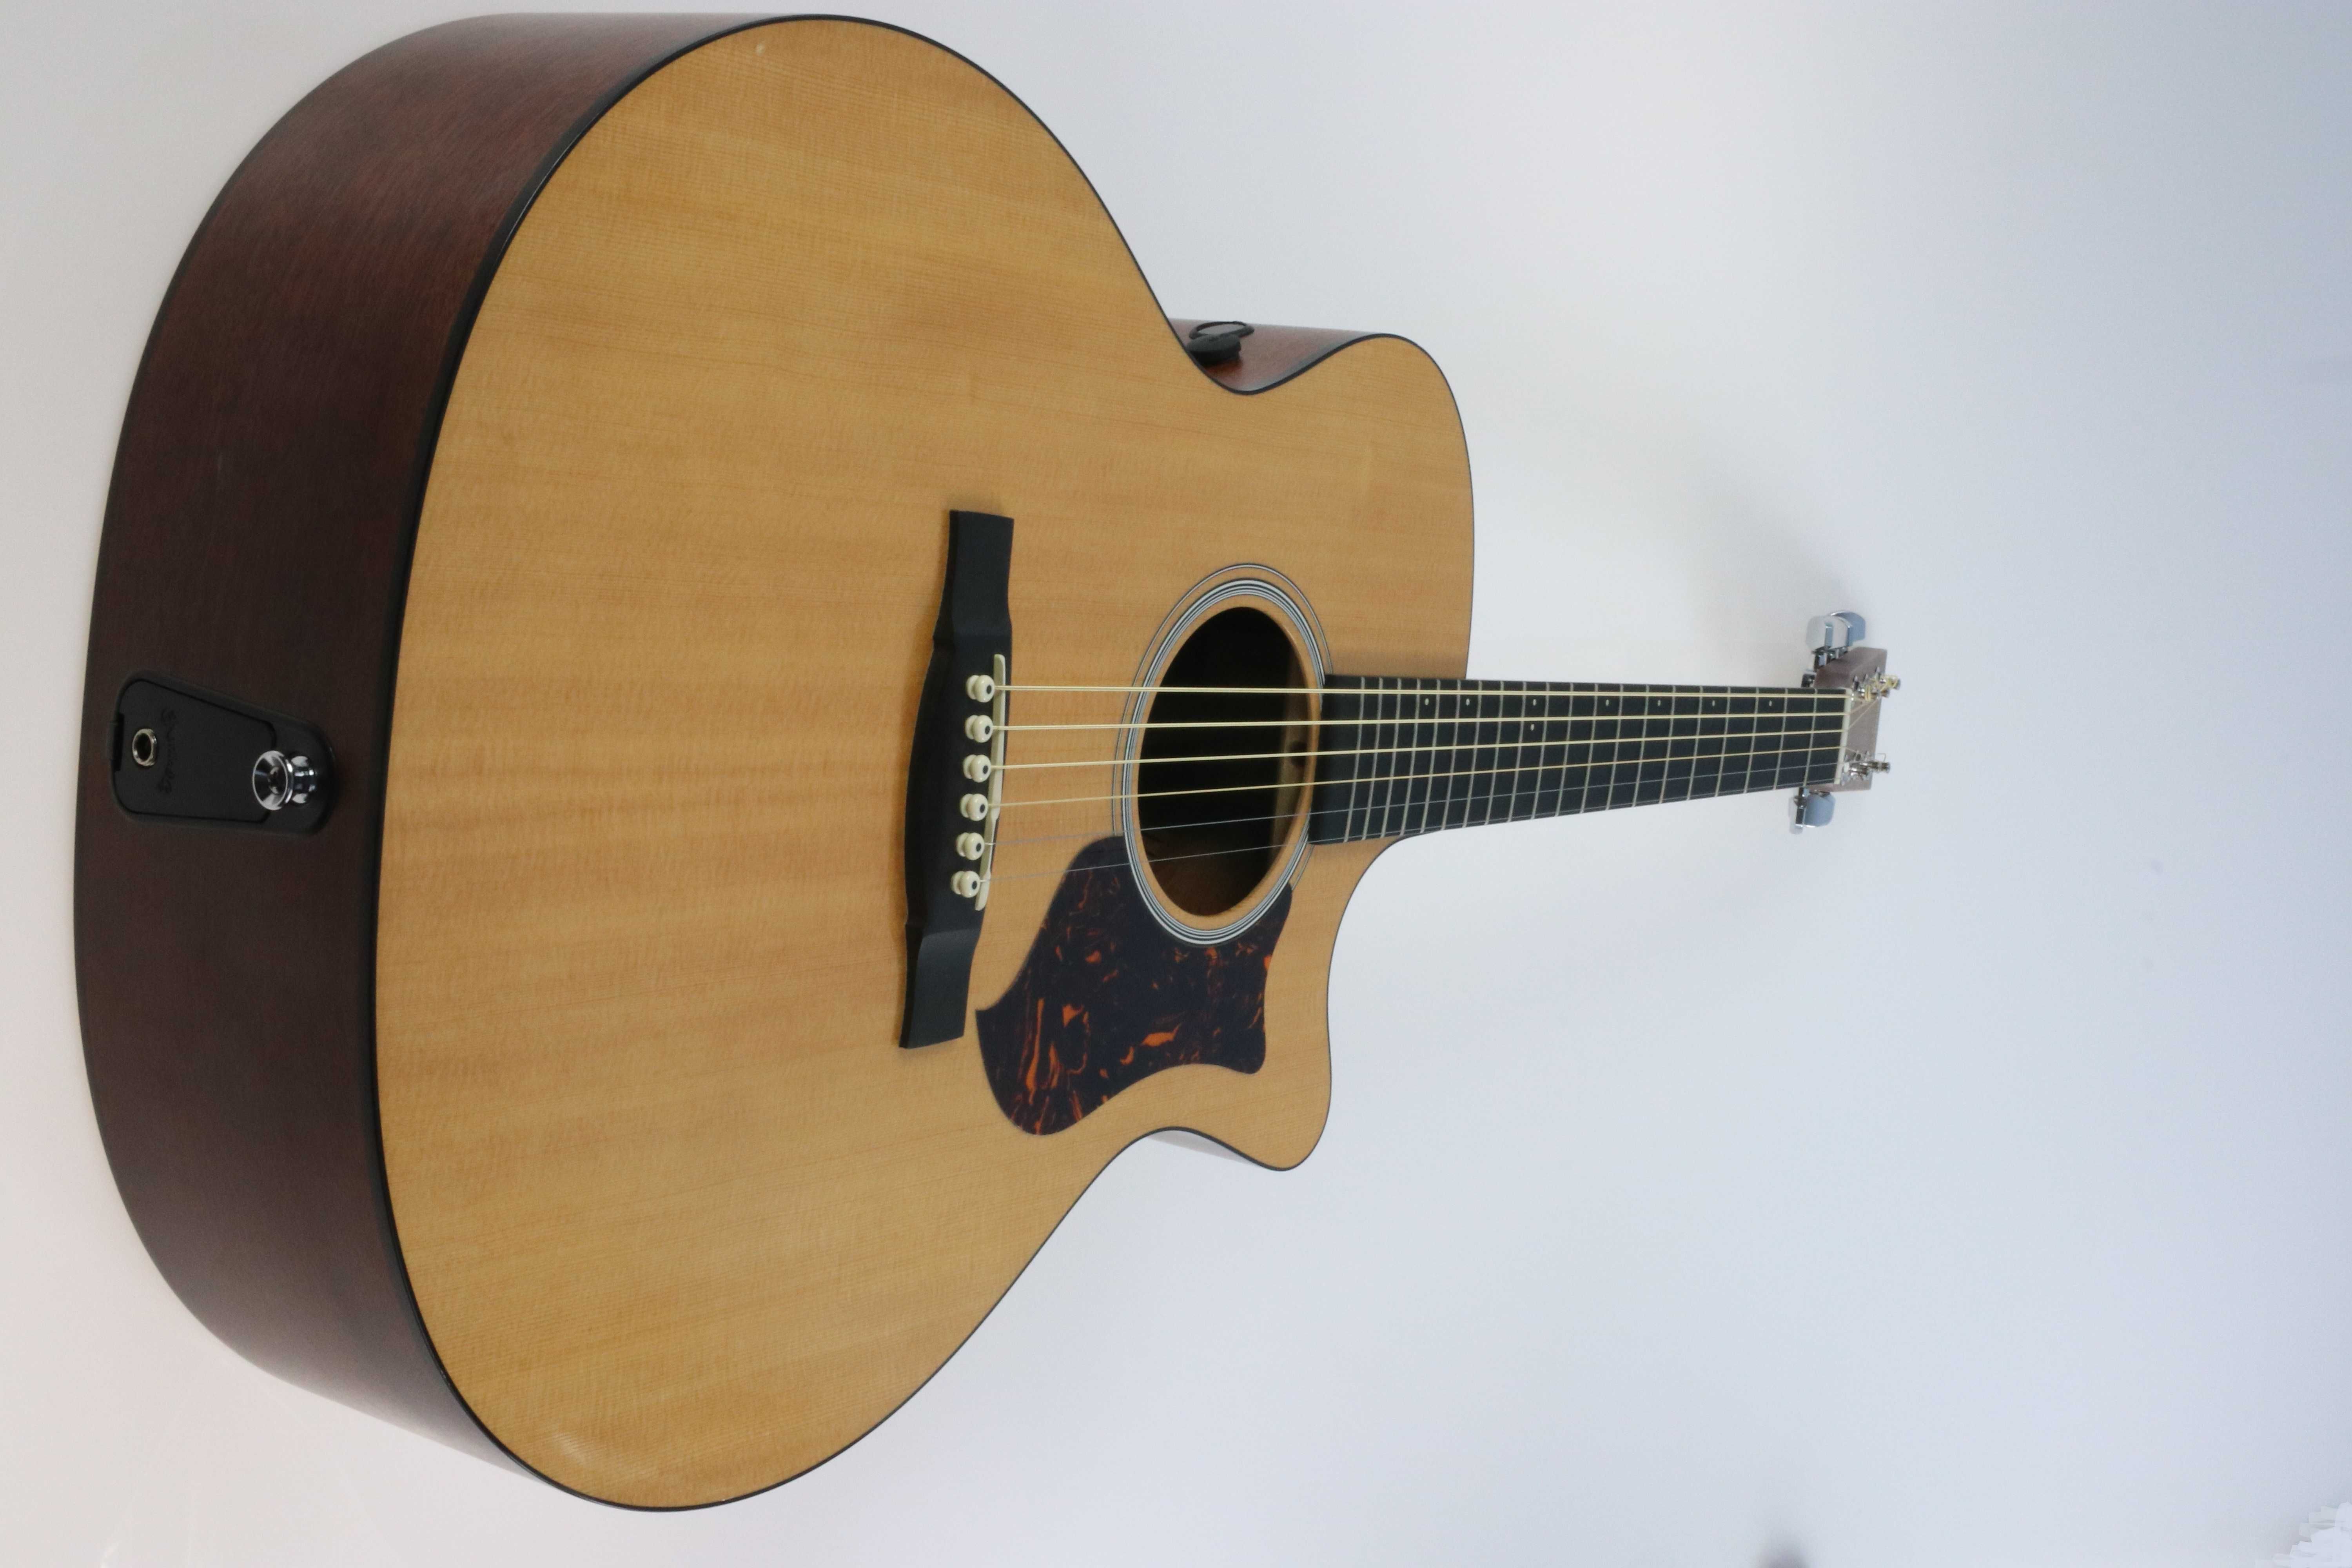 Gitara elektroakustyczna Martin GPCPA4 z 2012 roku mint condition